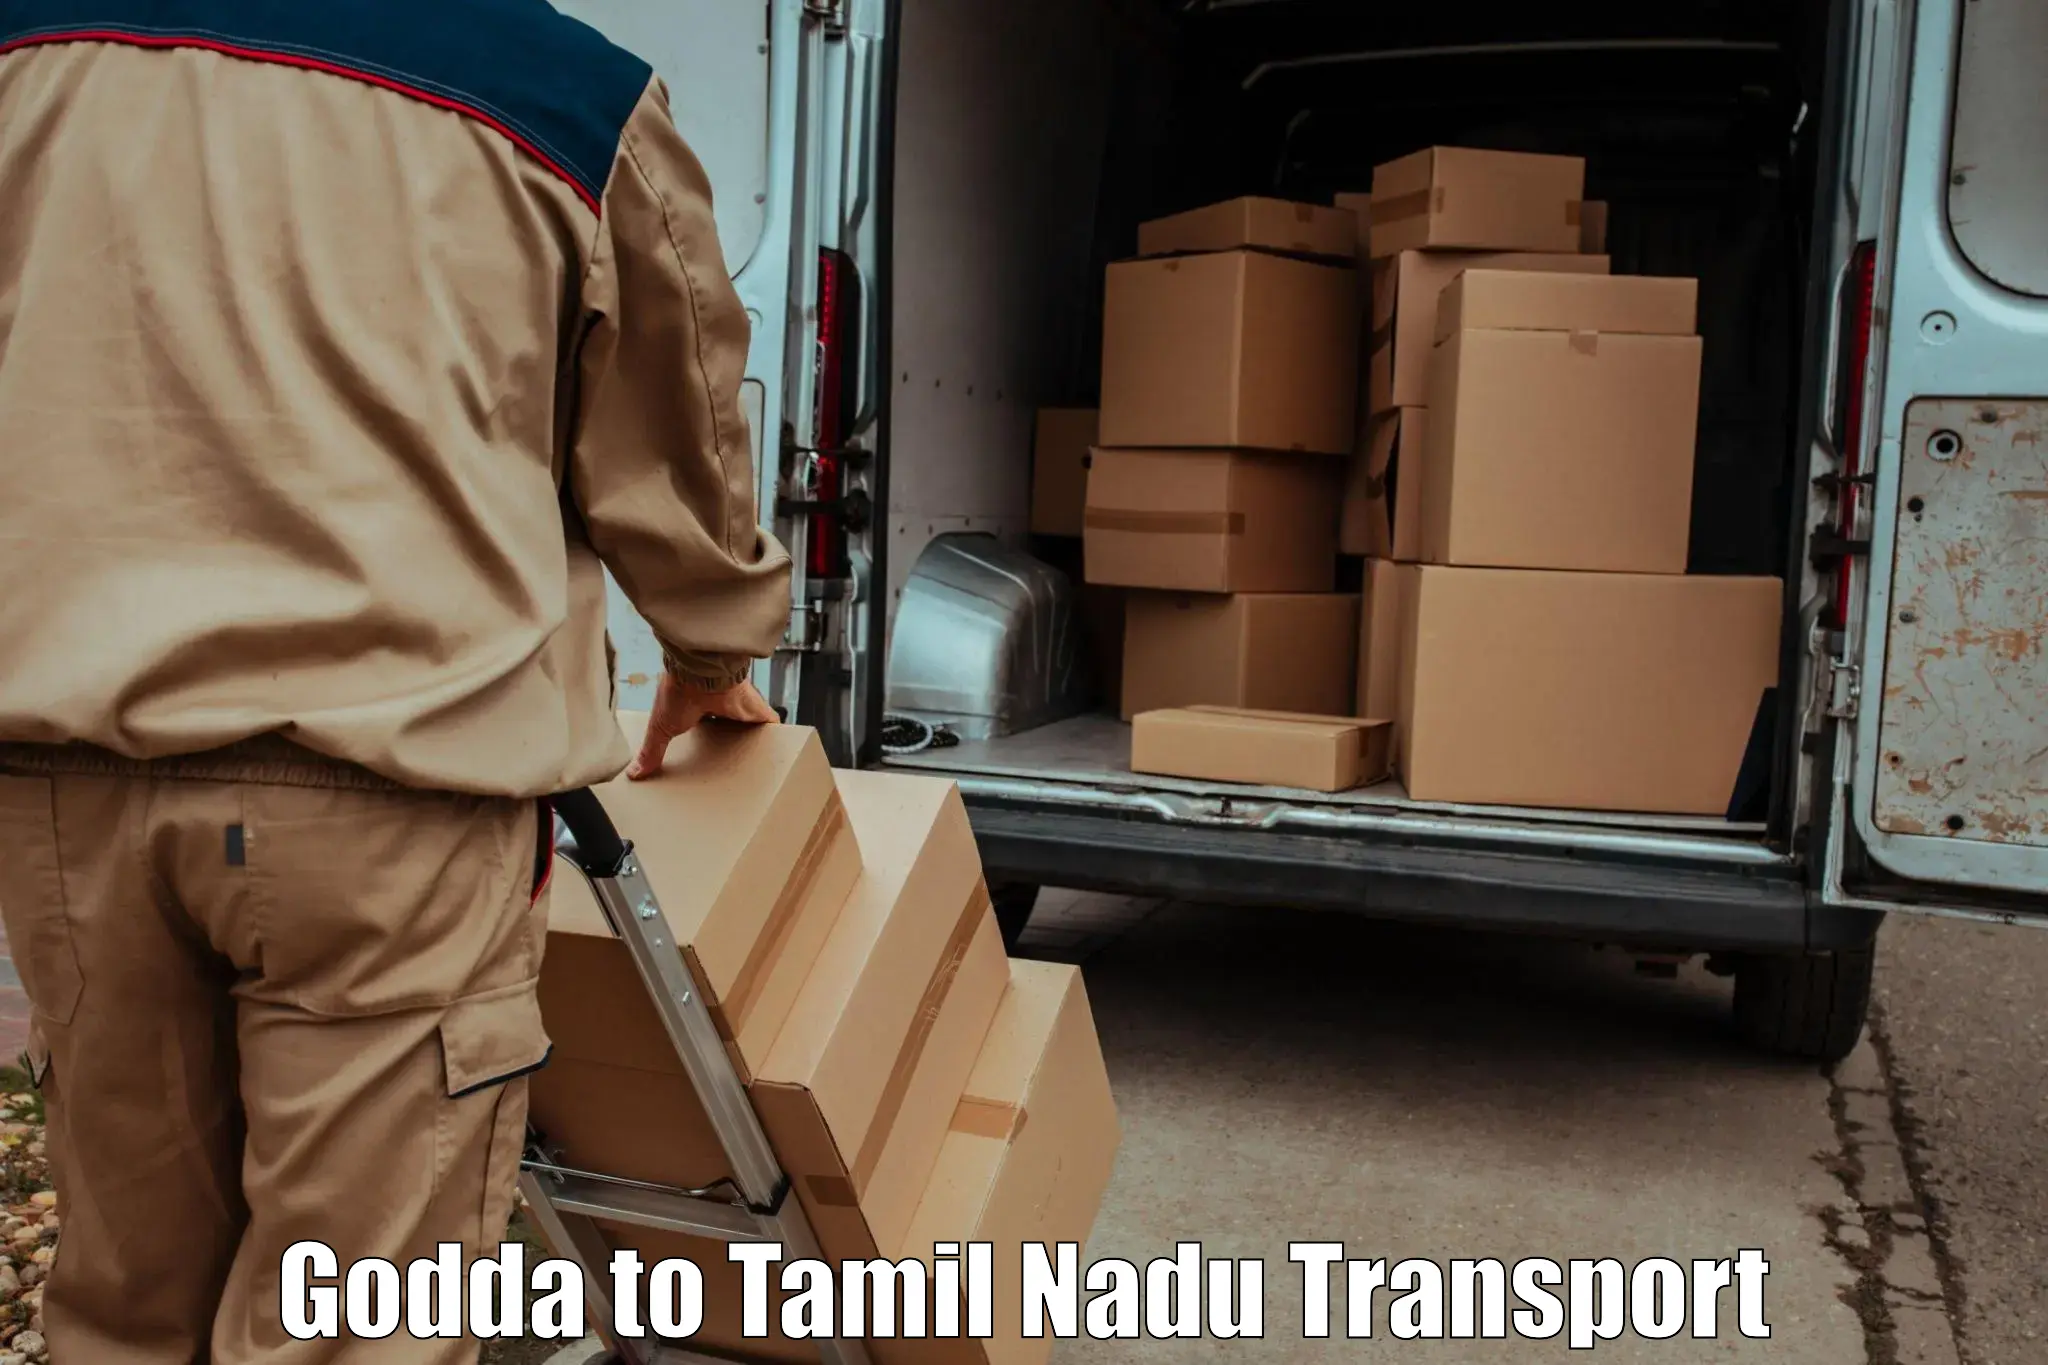 Lorry transport service Godda to Muthukulathur